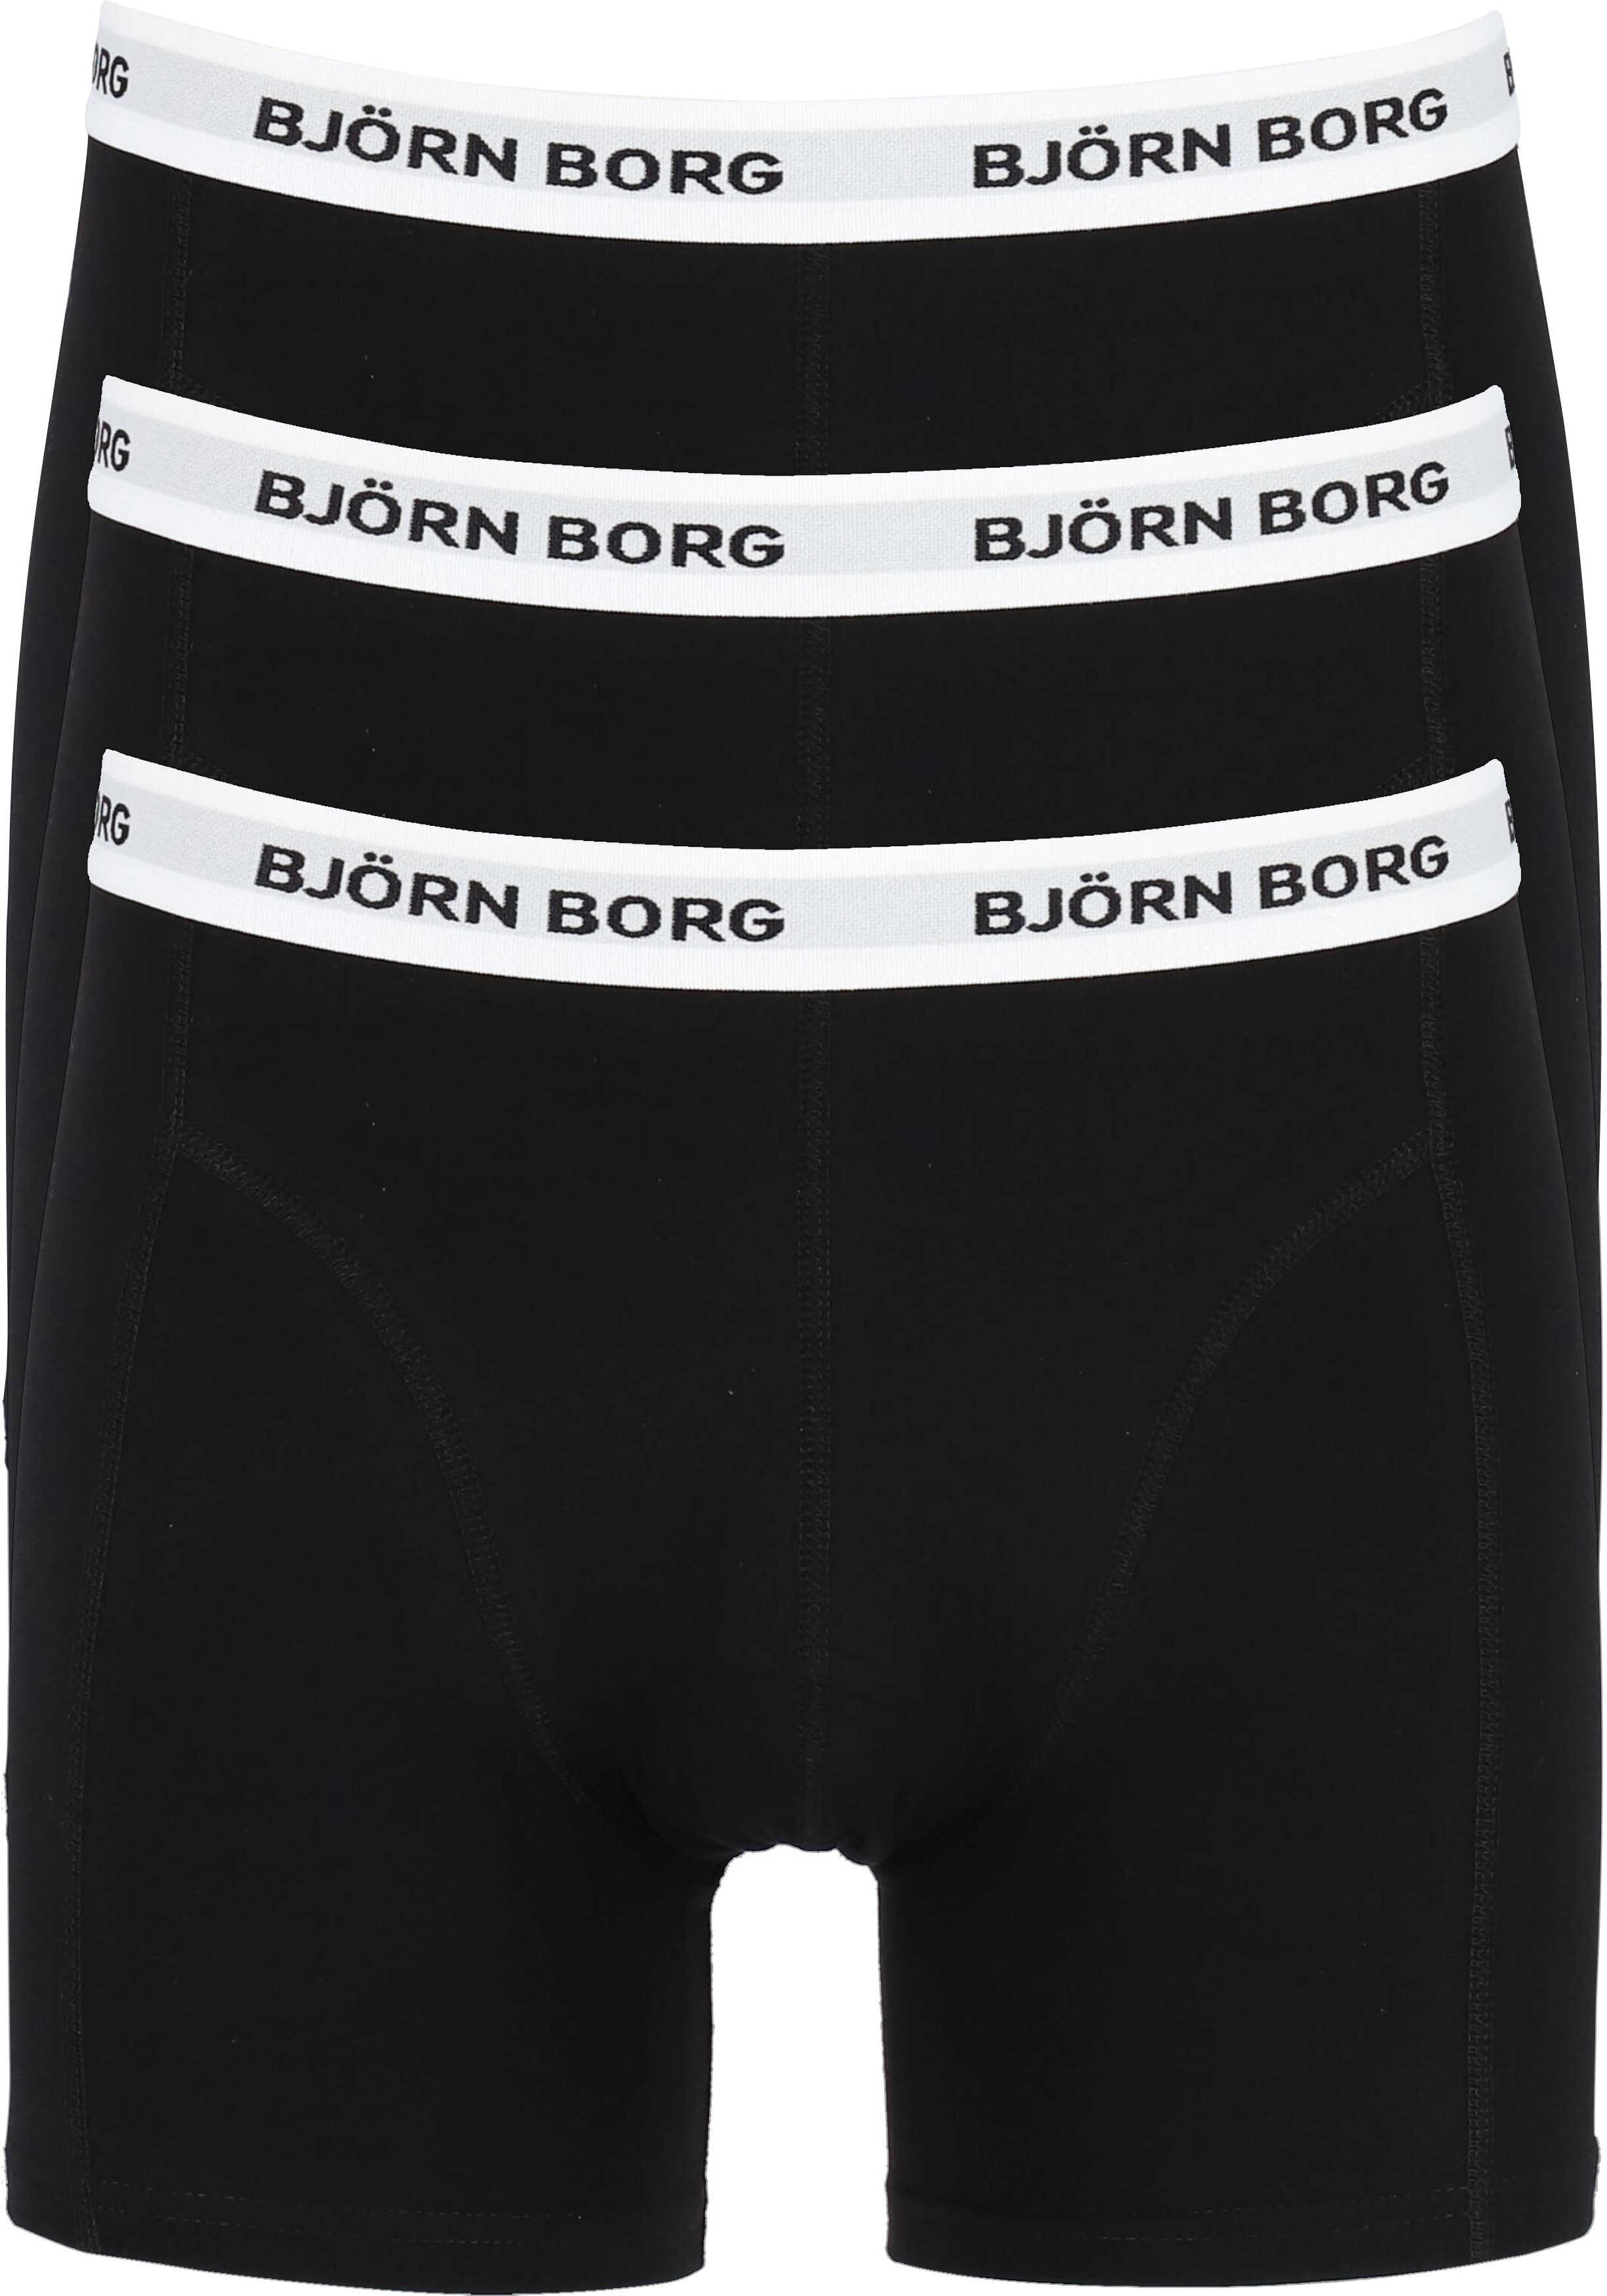 Bjorn Borg boxershorts Essential (3-pack), boxers normale lengte,... - Shop nieuwste